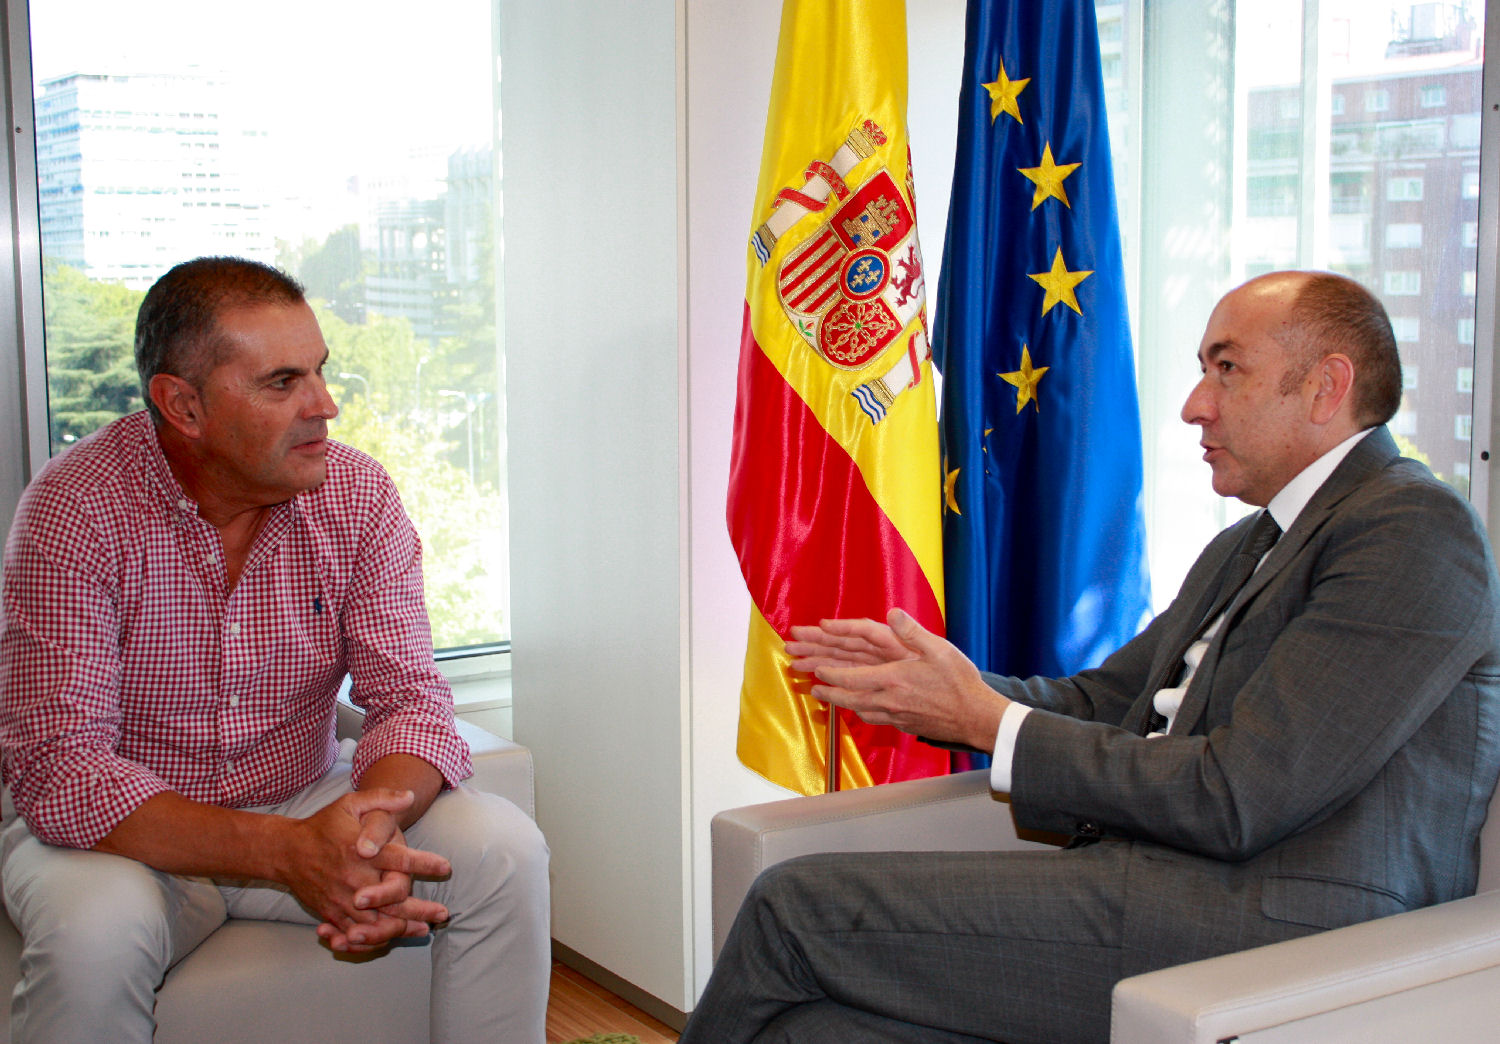 Soler se reúne con el alcalde de Morcín